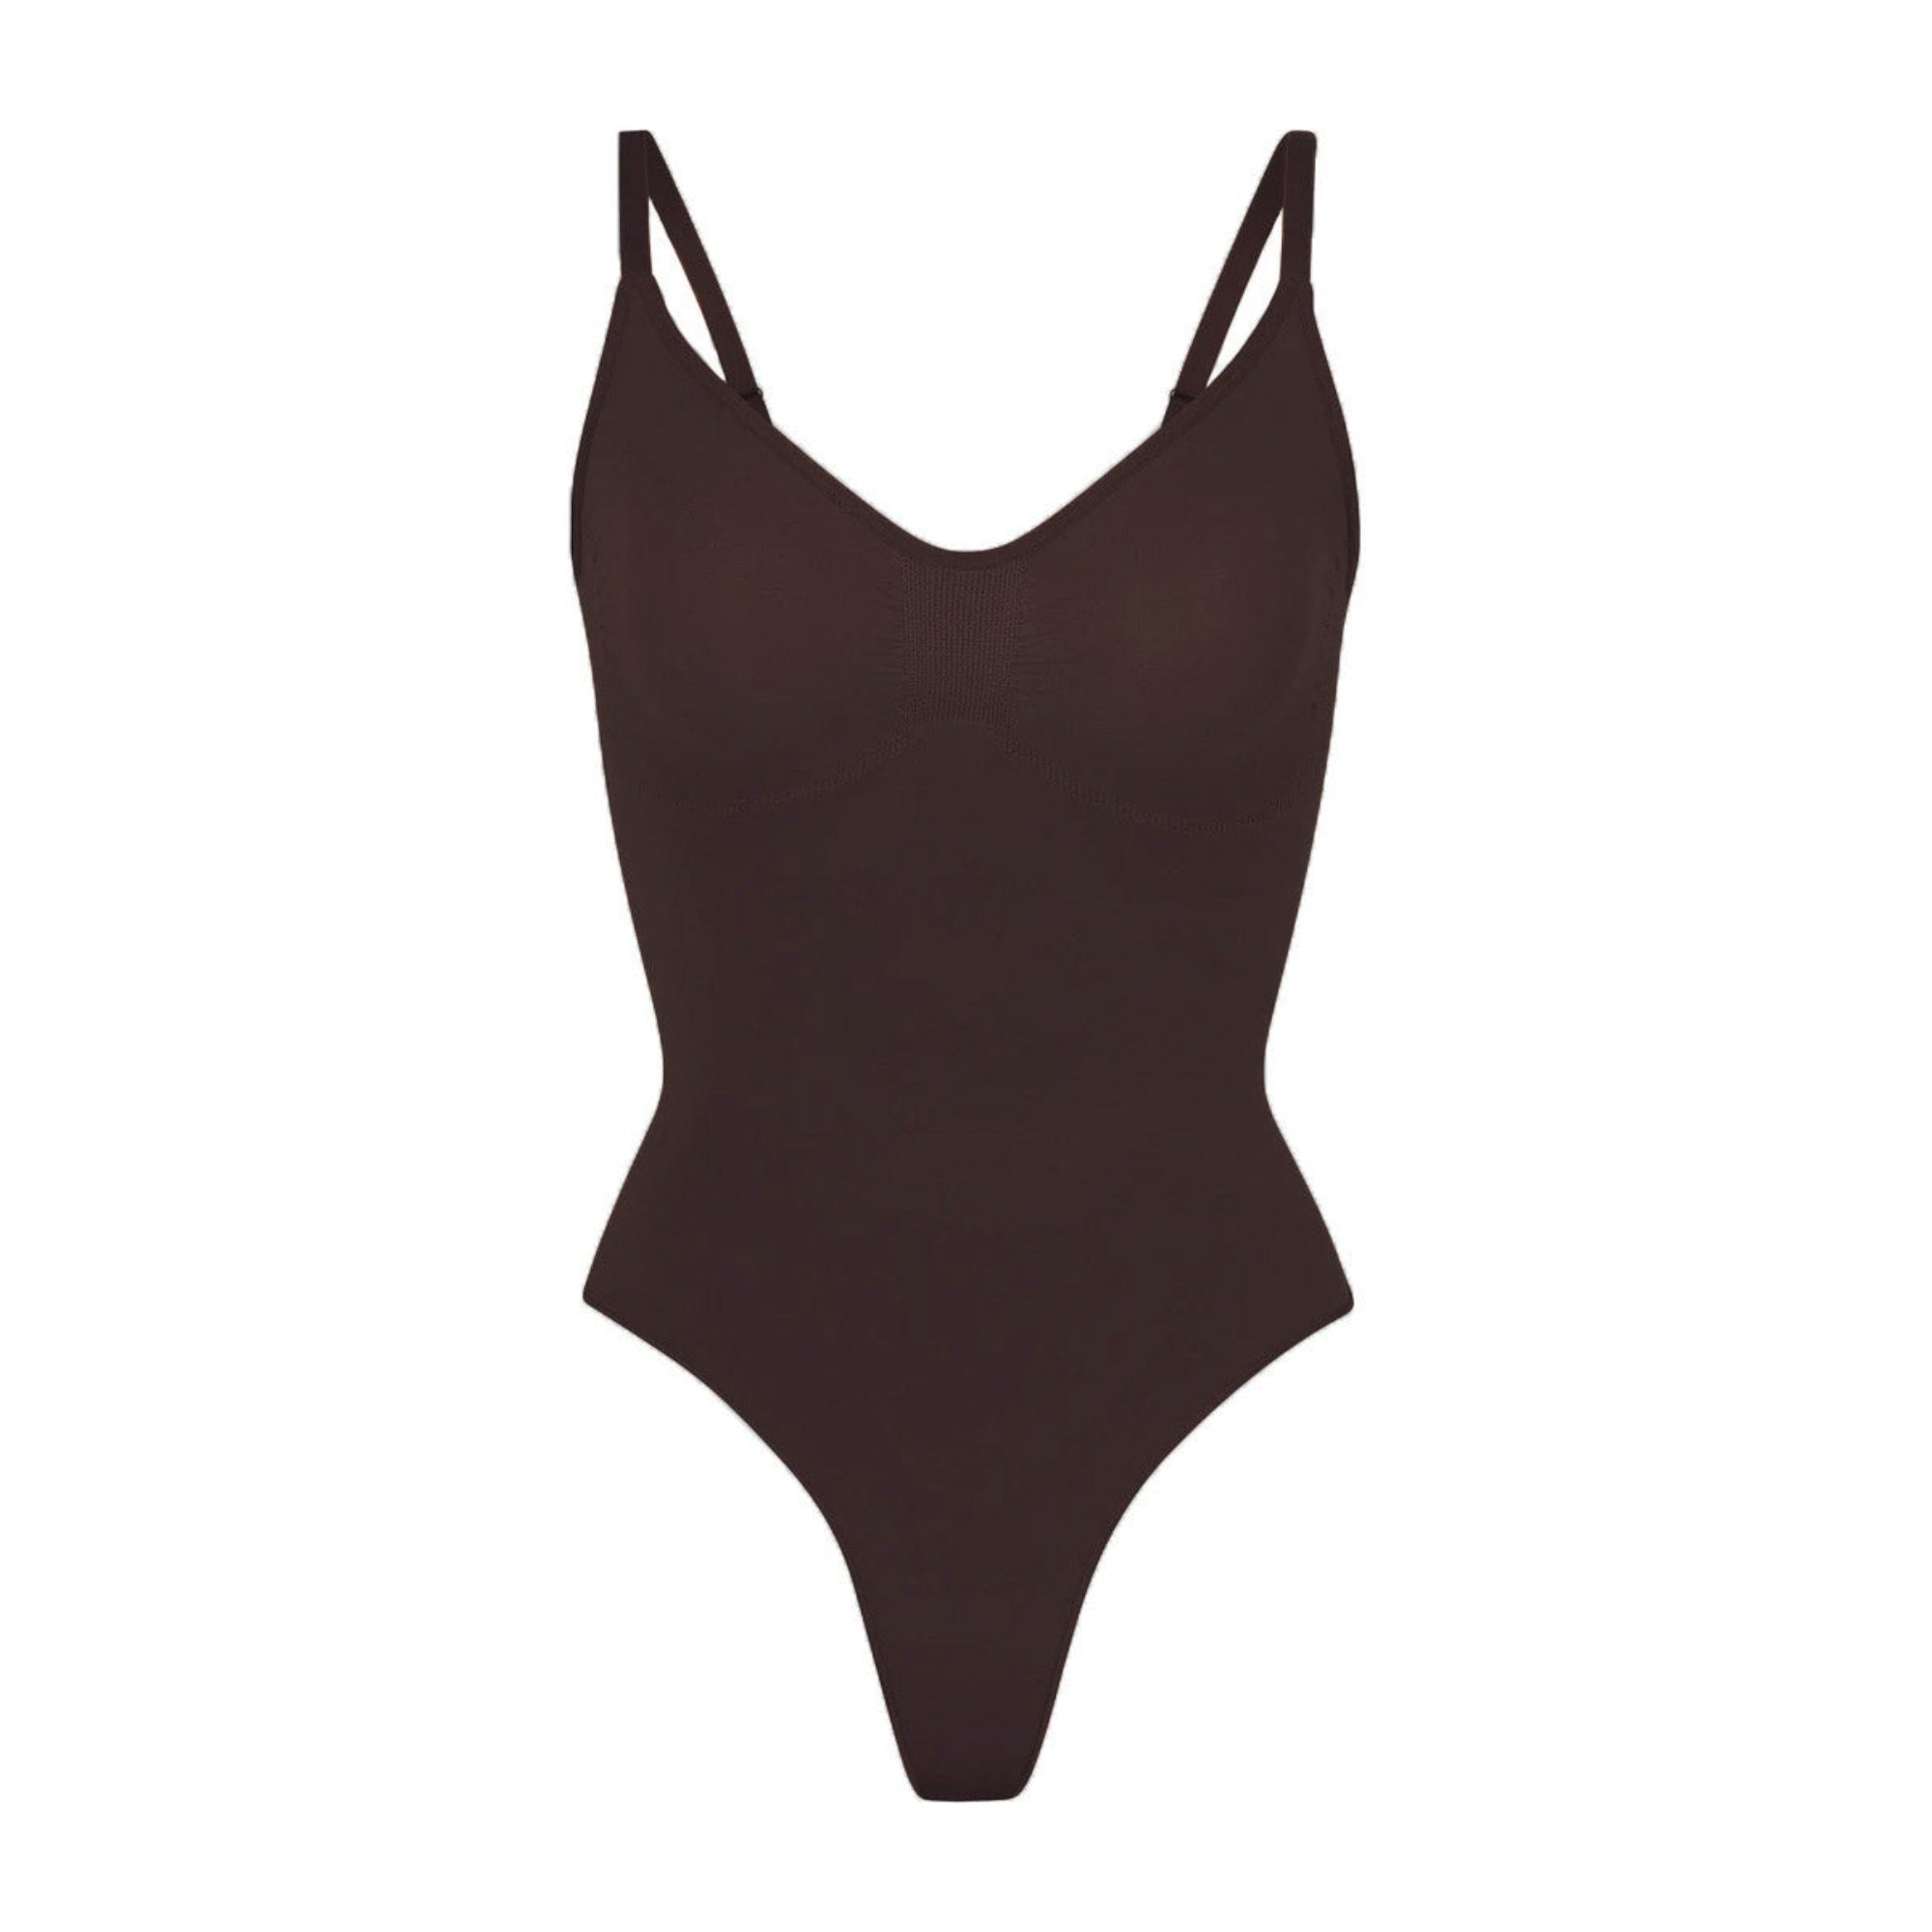 Jersey thong body - Dark brown - Ladies